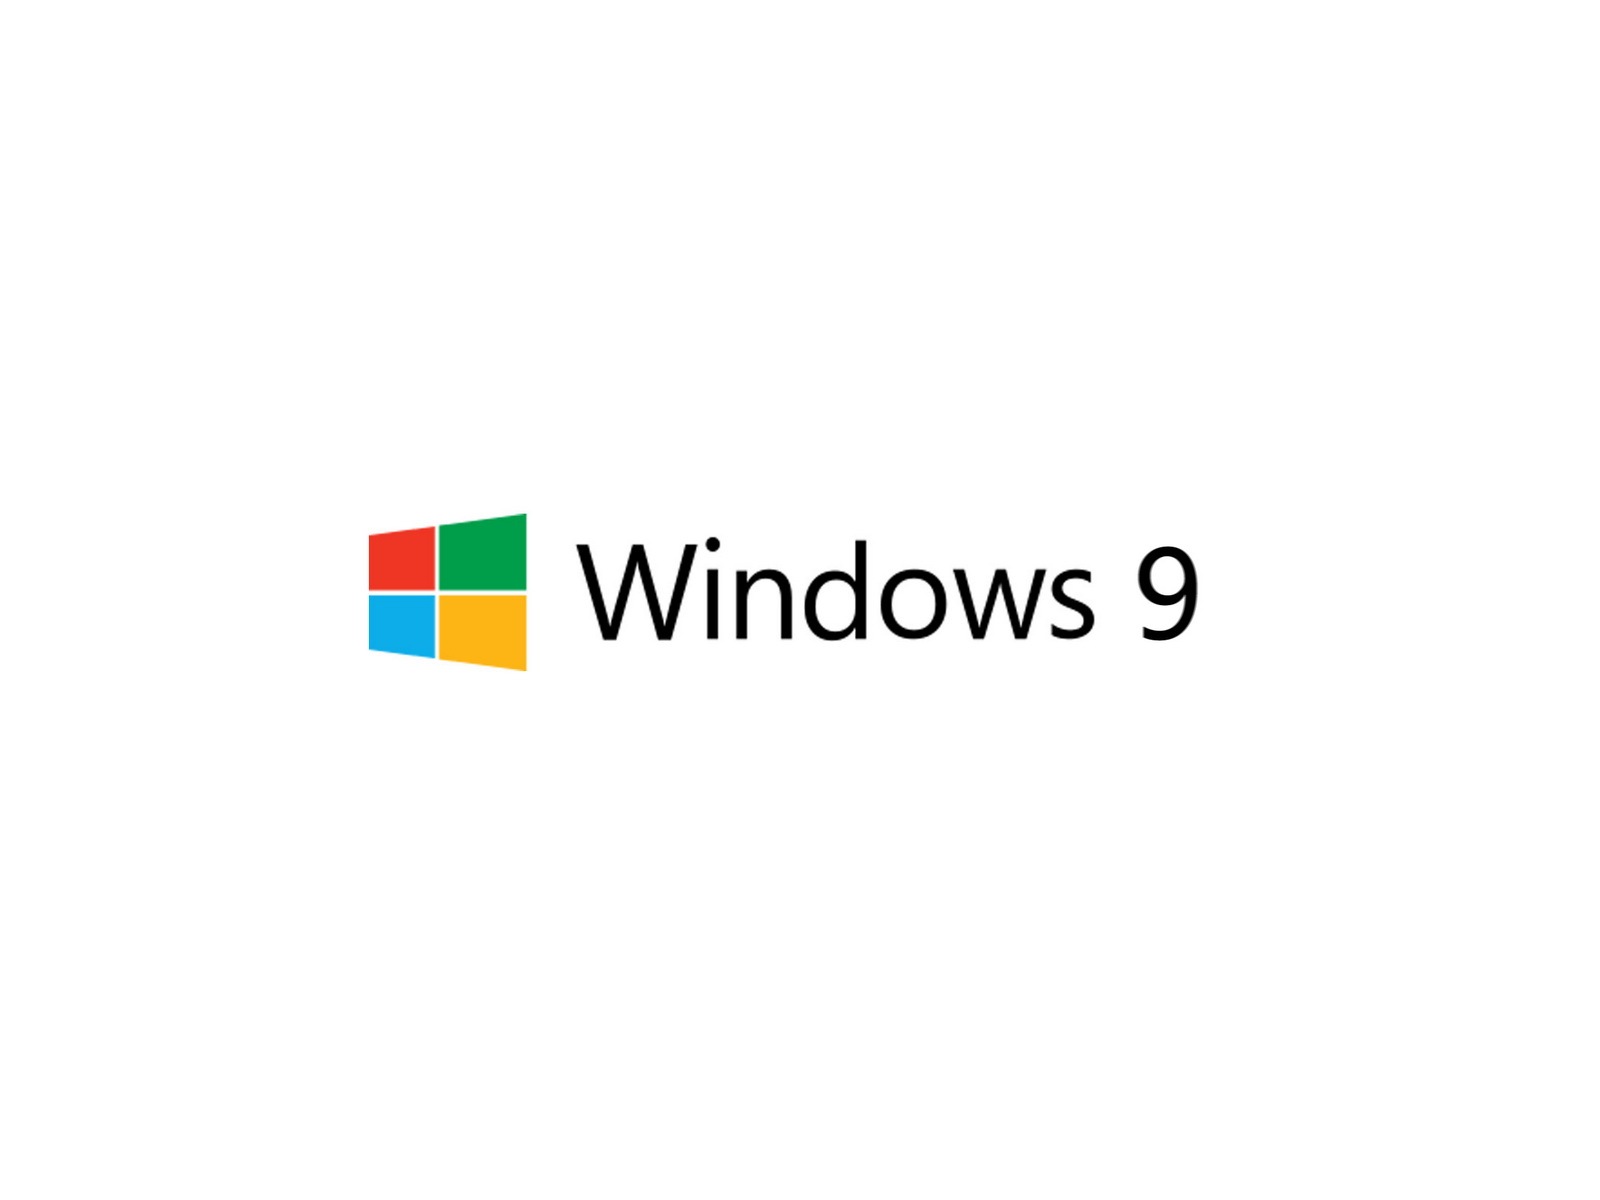 微软 Windows 9 系统主题 高清壁纸7 - 1600x1200